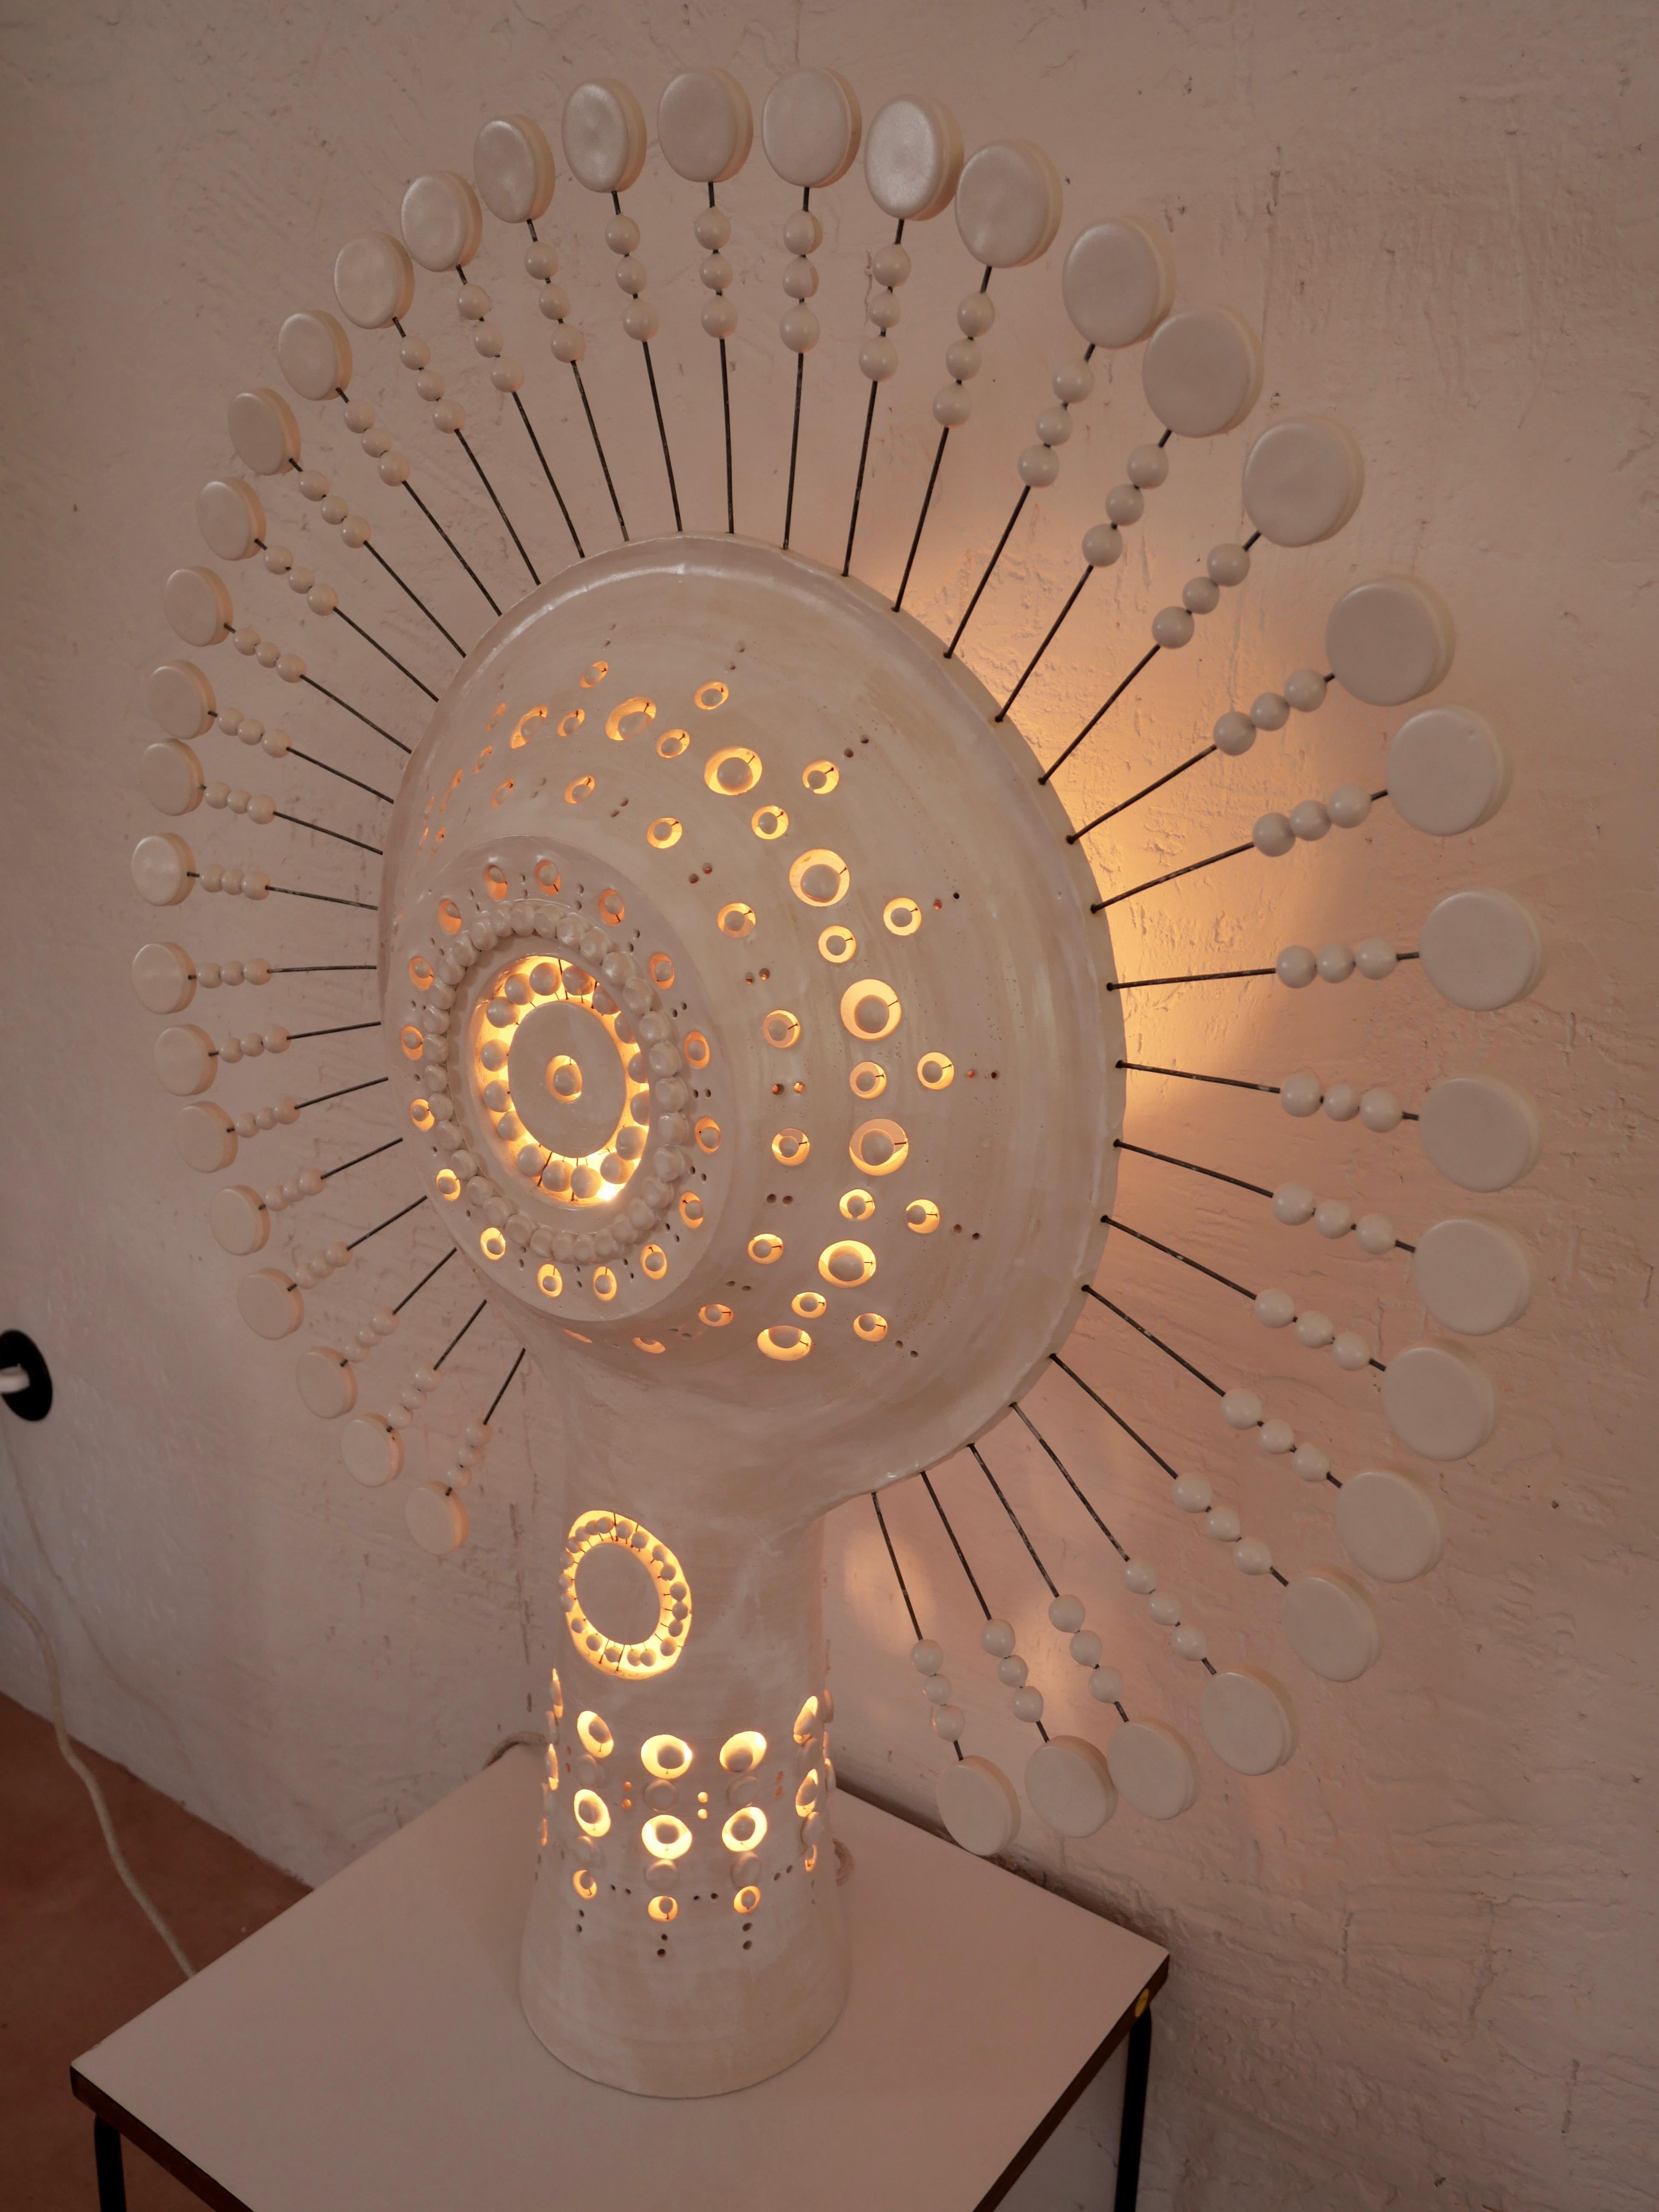 Lampe solaire Georges Pelletier en céramique émaillée blanche, lampadaire ou lampe de table sculpturale apportant à votre espace une expérience lumineuse étonnante à la tombée de la nuit, et une présence sculpturale stupéfiante le jour. Dimensions